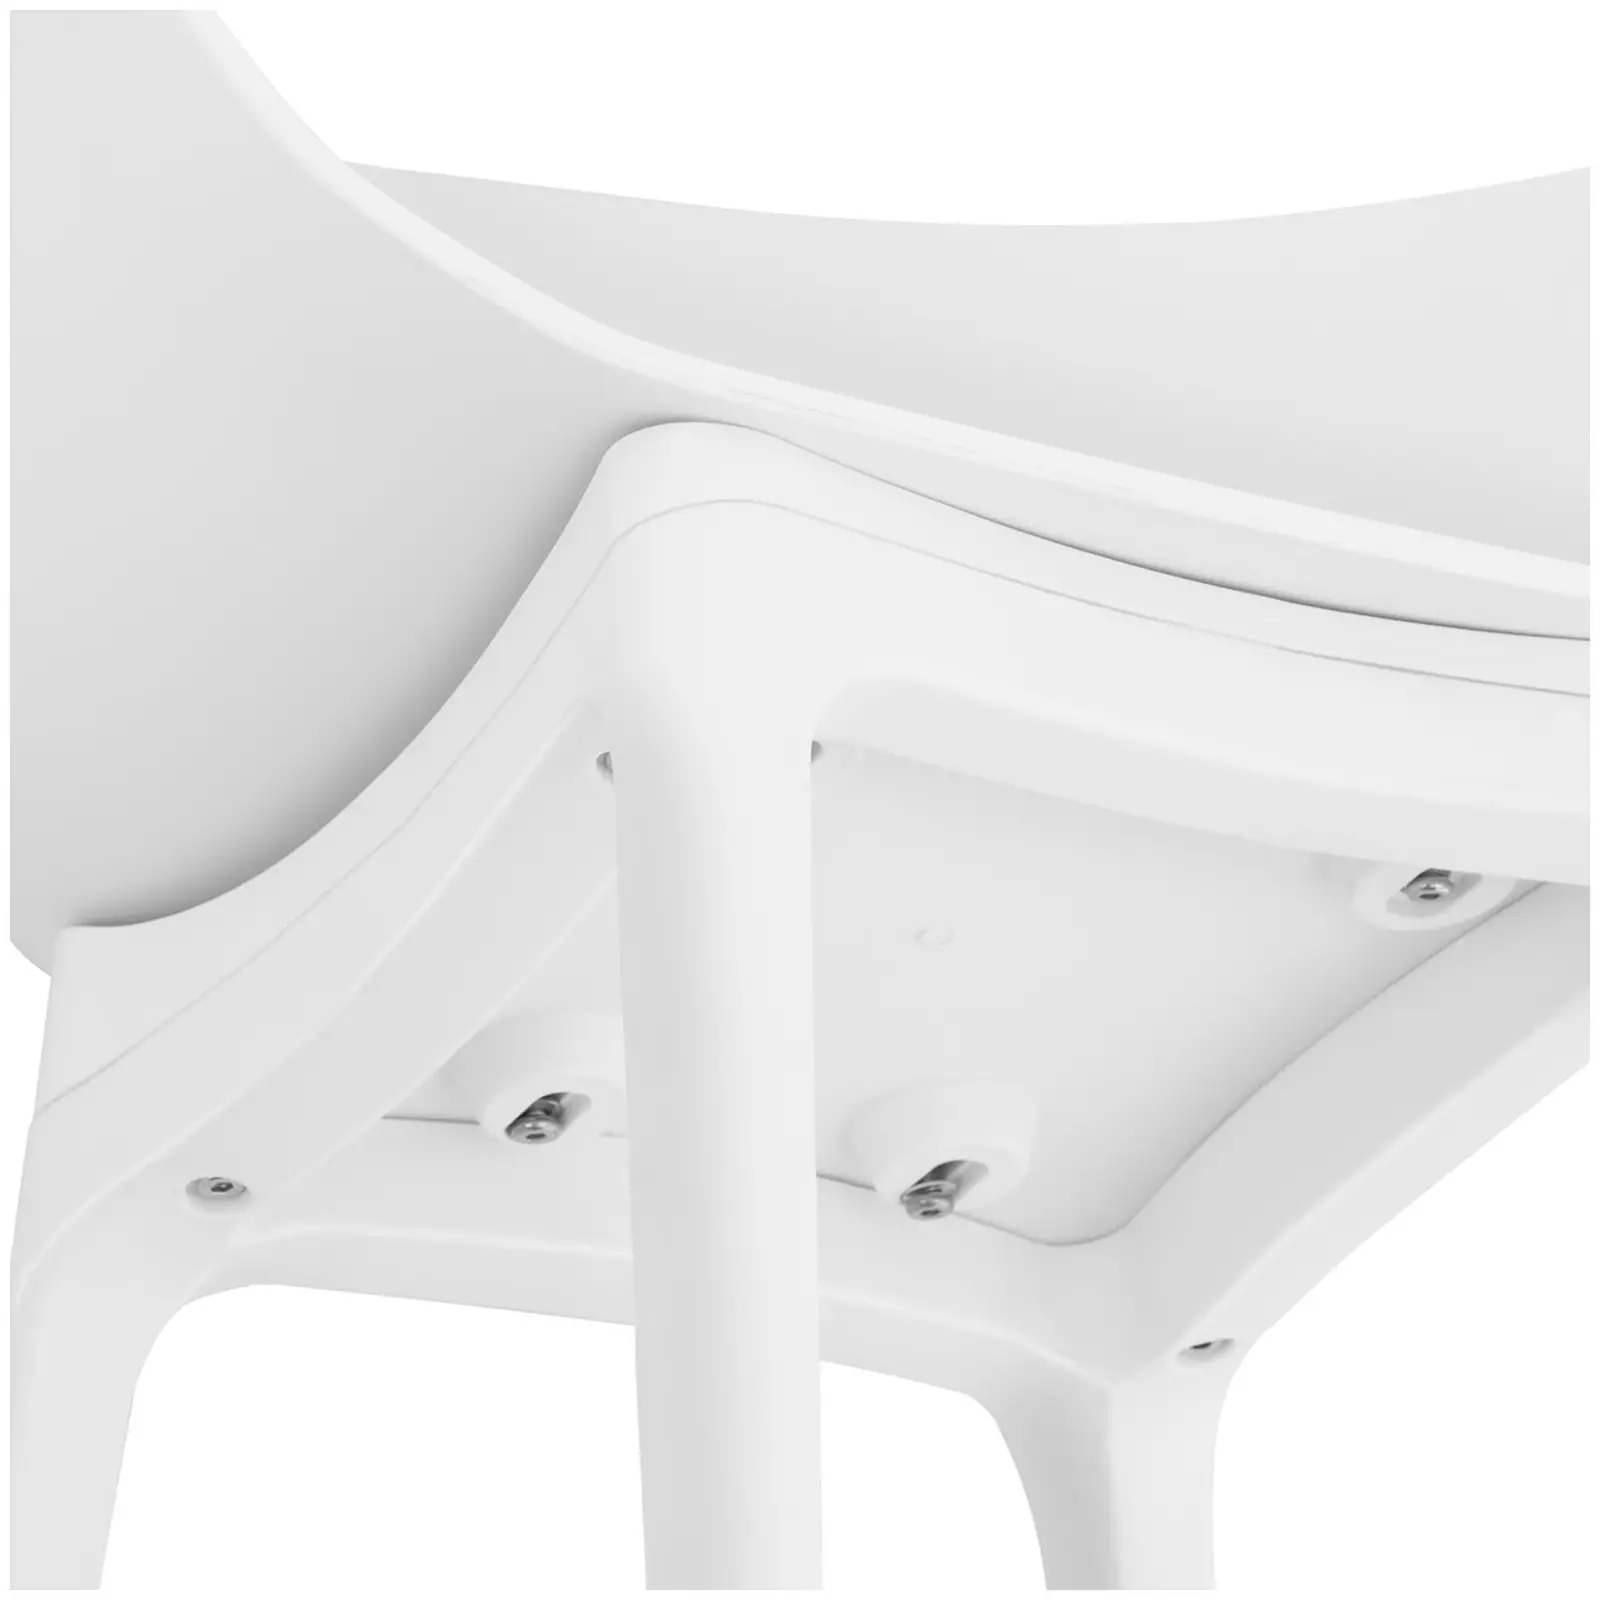 Produtos recondicionados Cadeira - até 150 kg - 2 pçs.